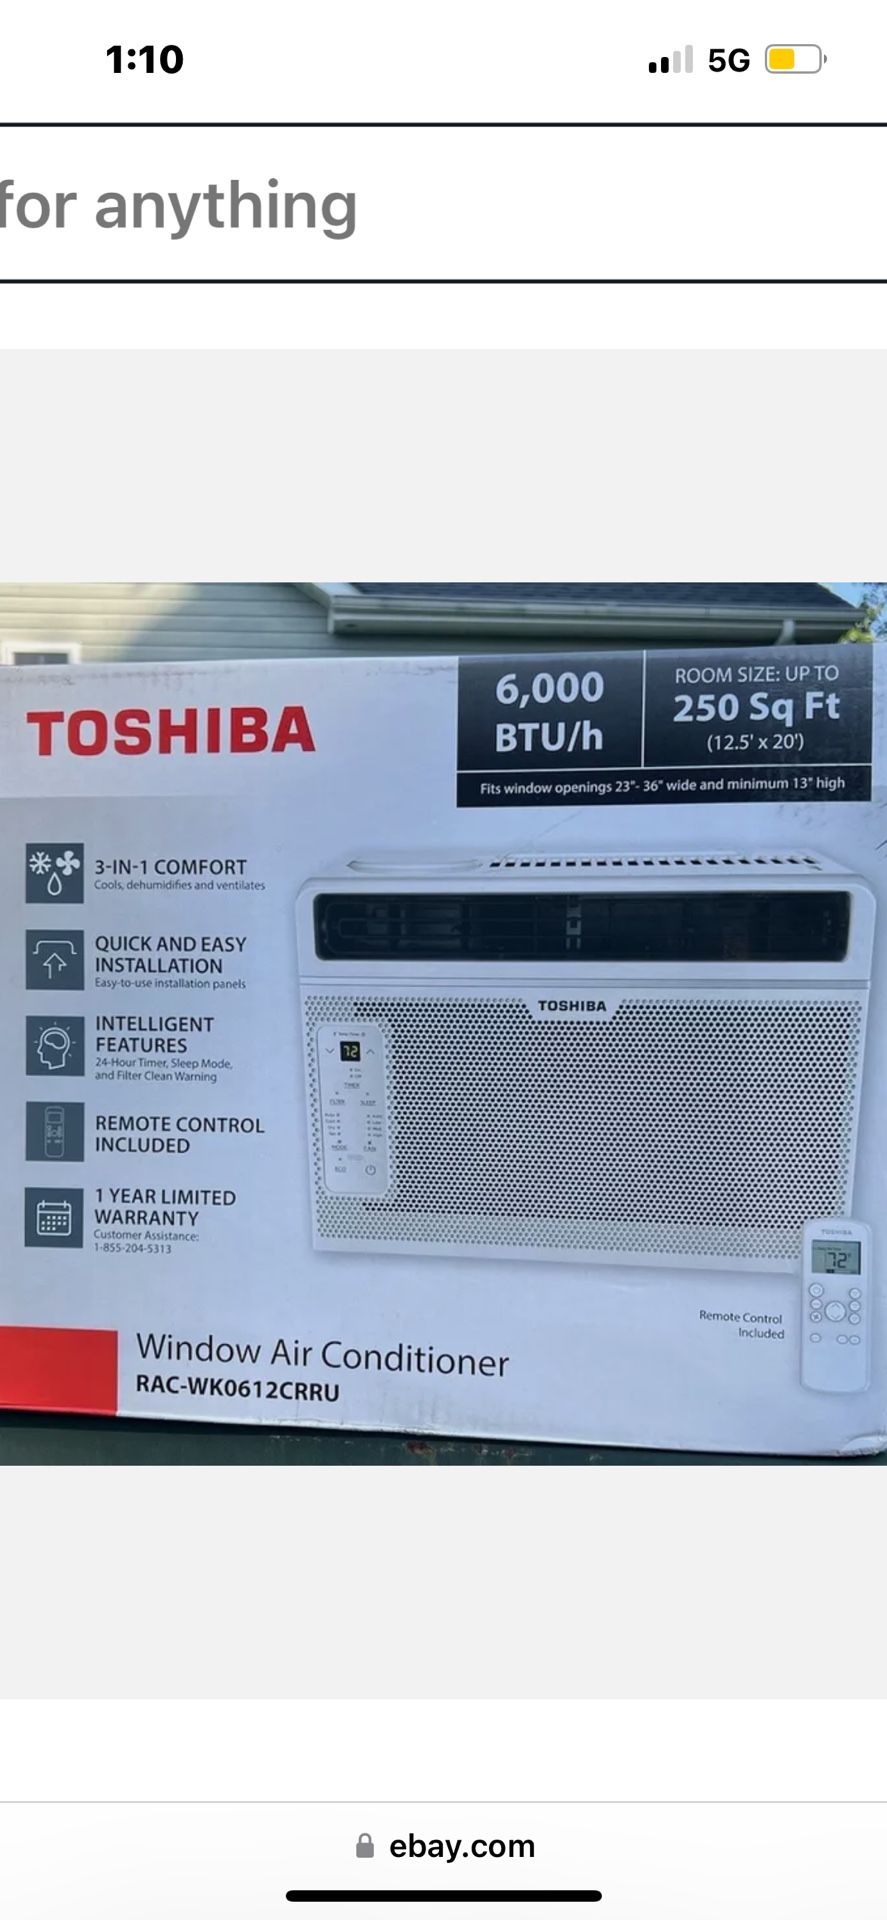 Toshiba AC w/ remote control  Brand New in Box